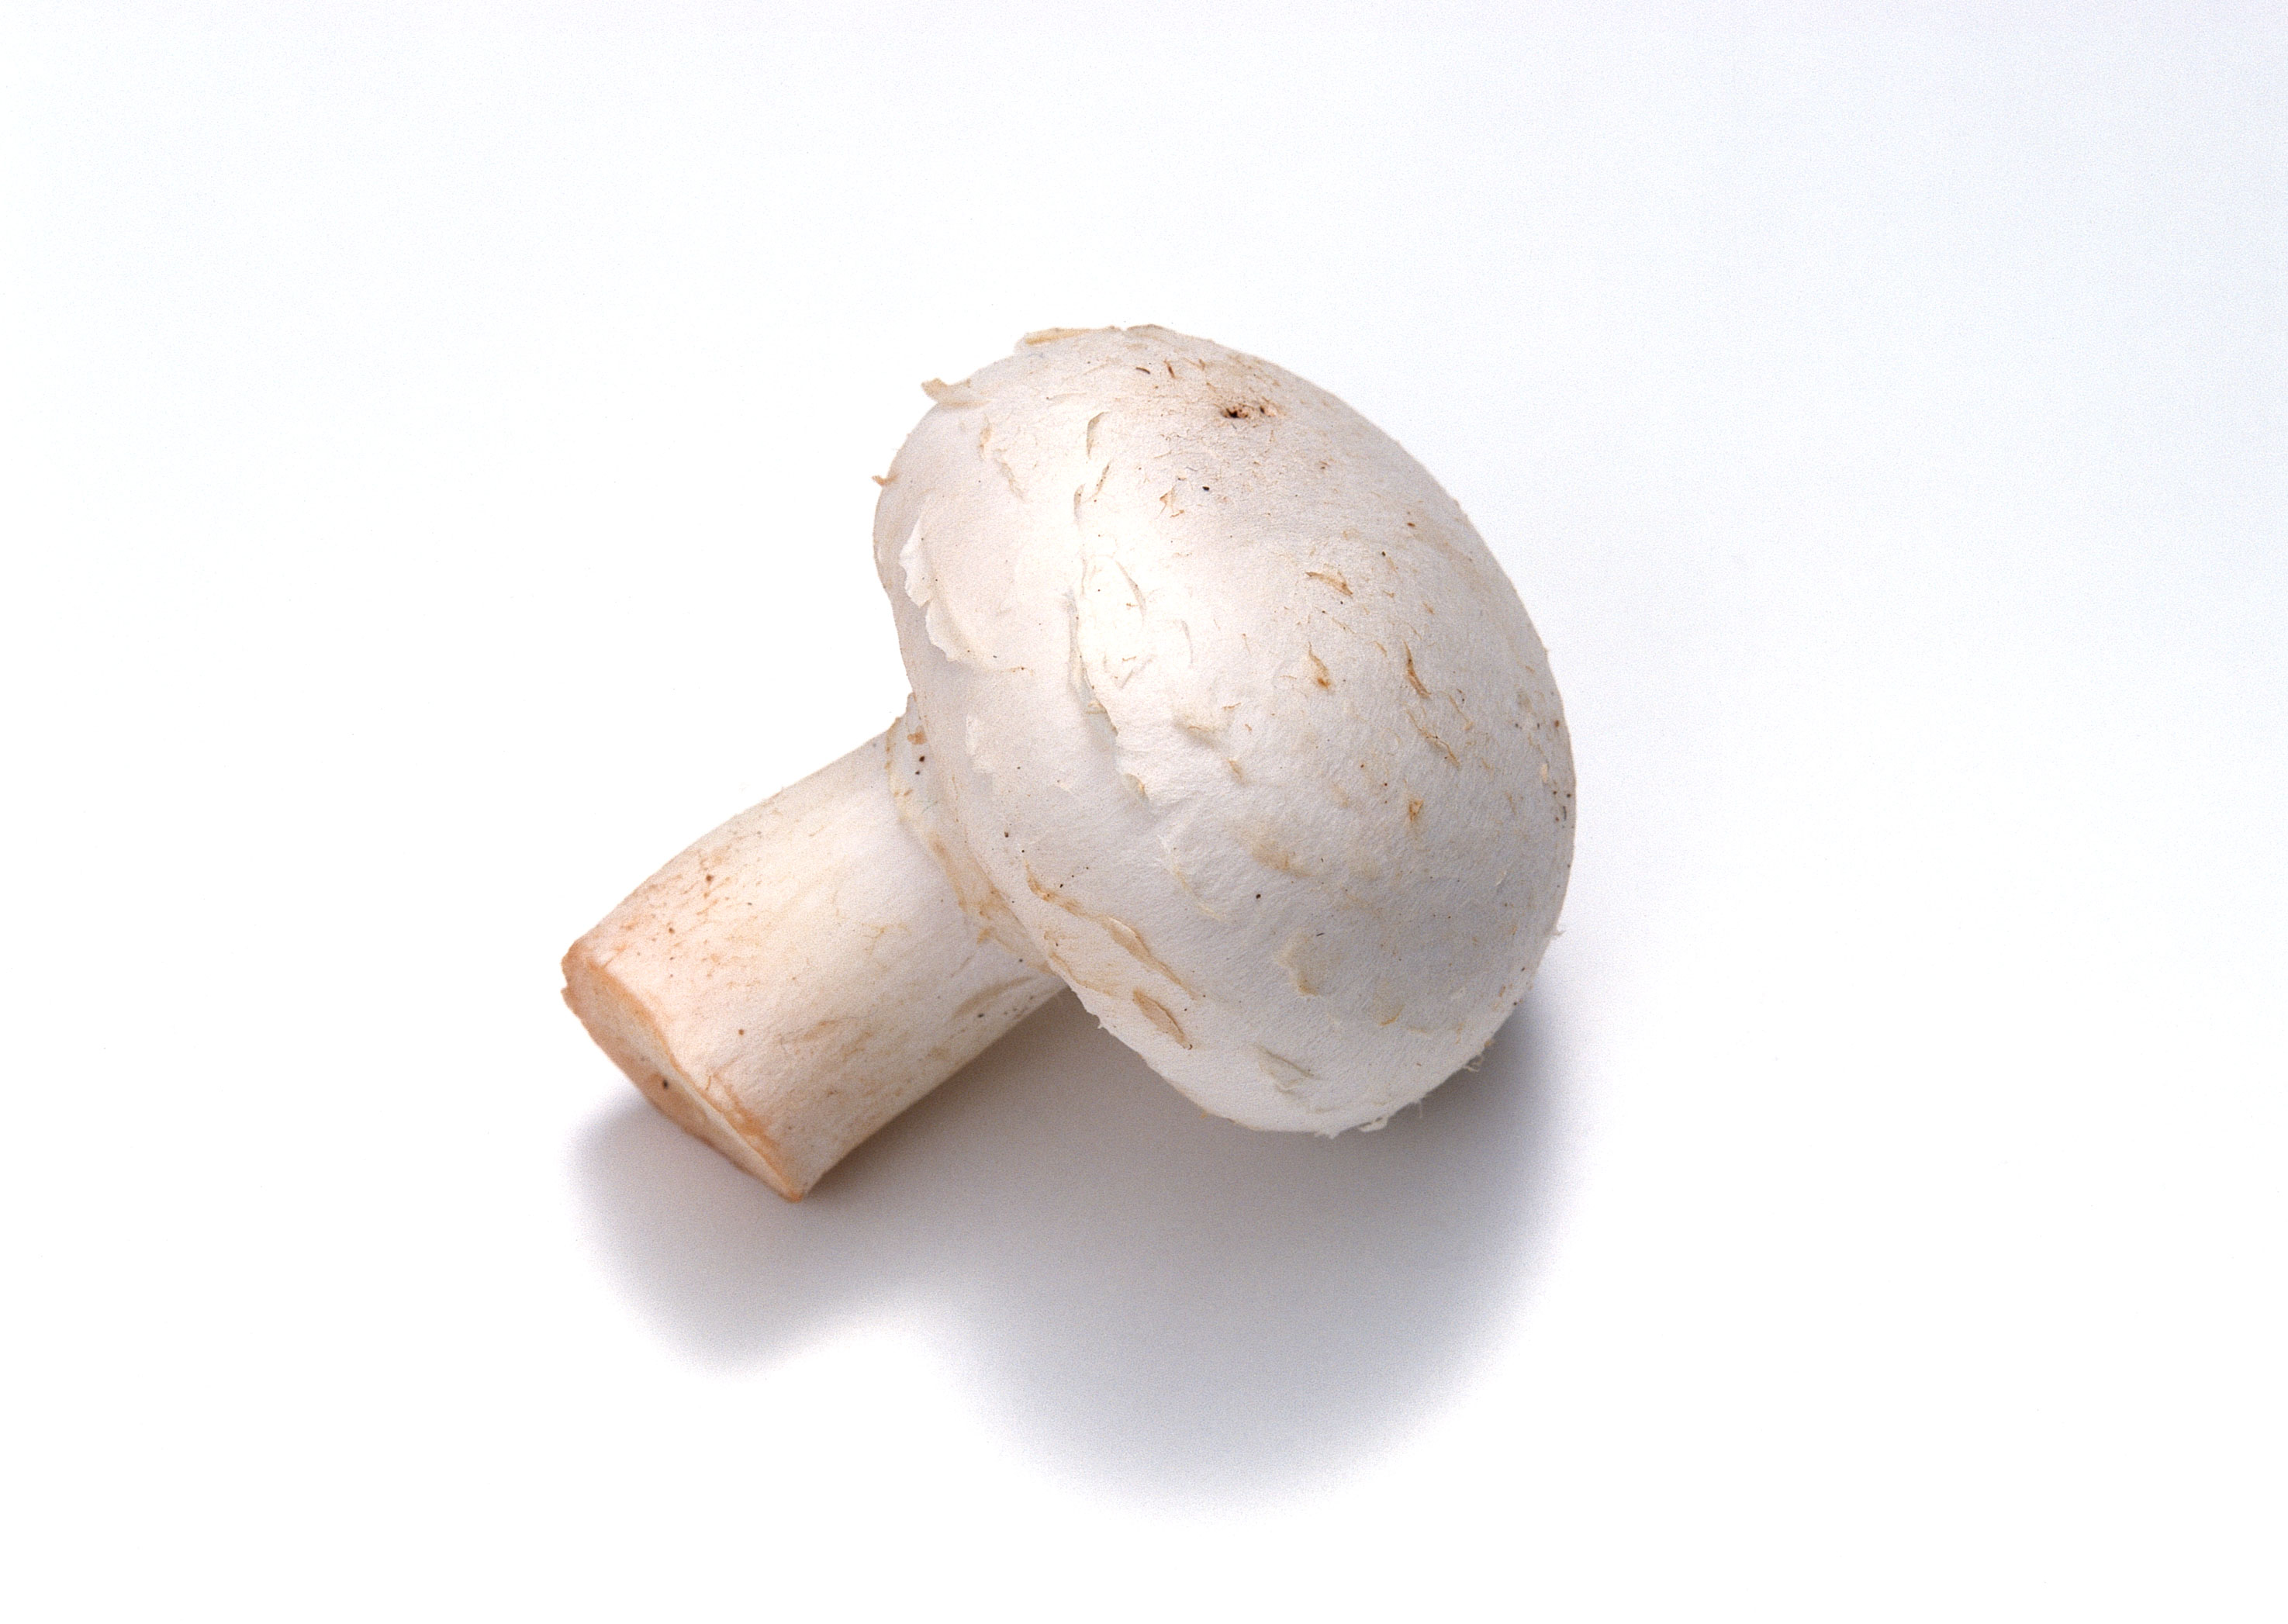 Белые грибы шампиньоны